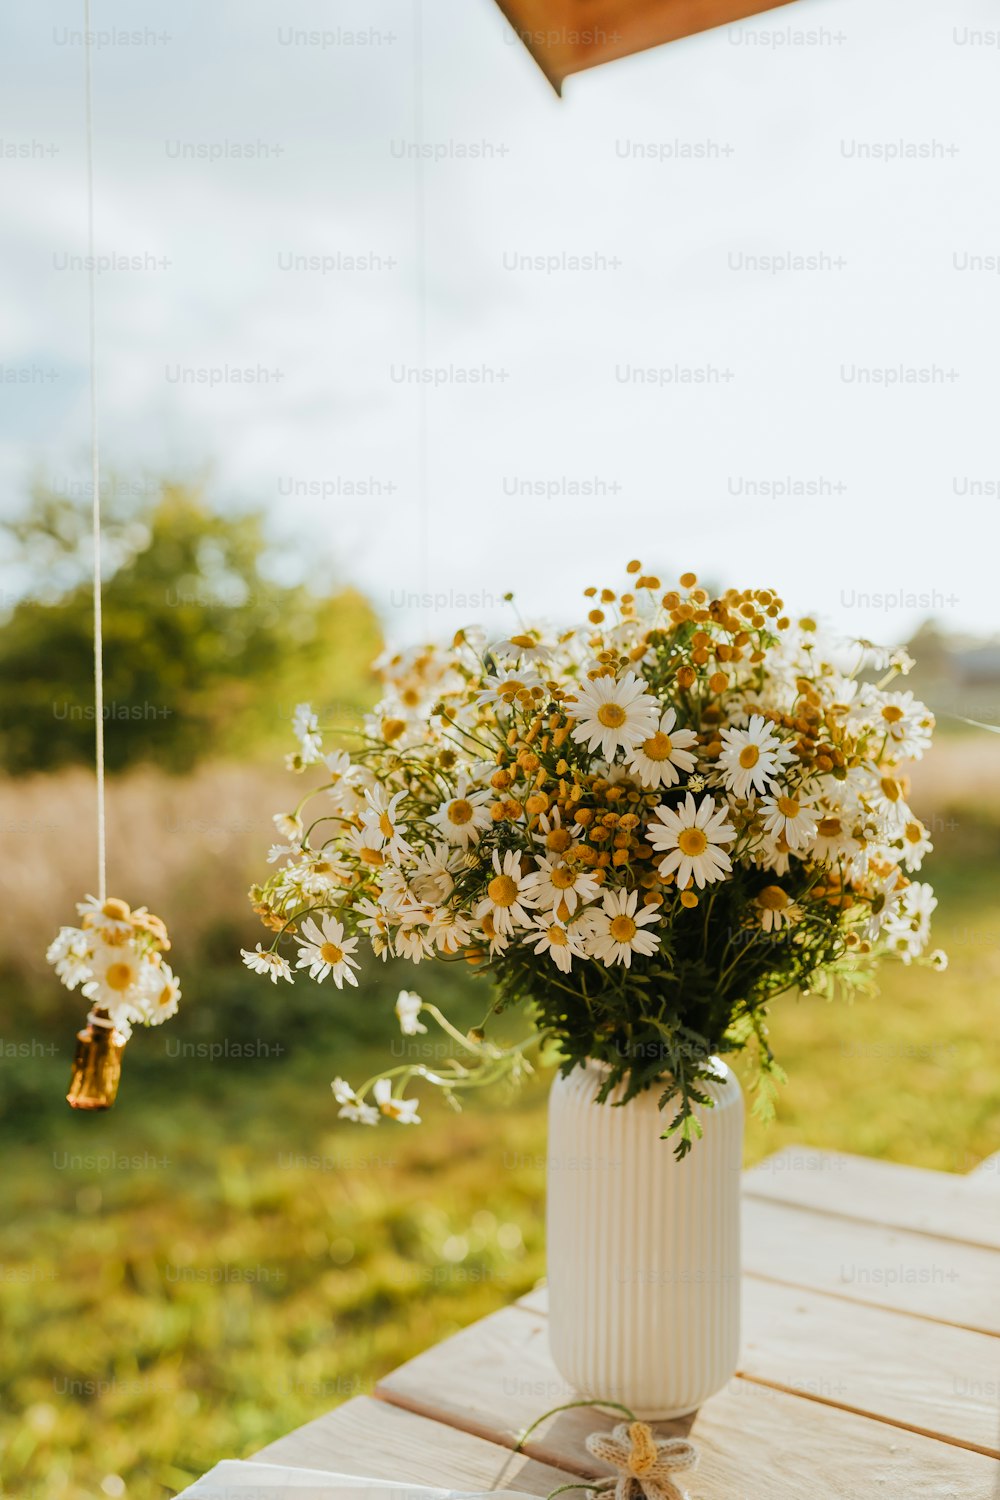 木製のテーブルの上にたくさんの花でいっぱいの白い花瓶